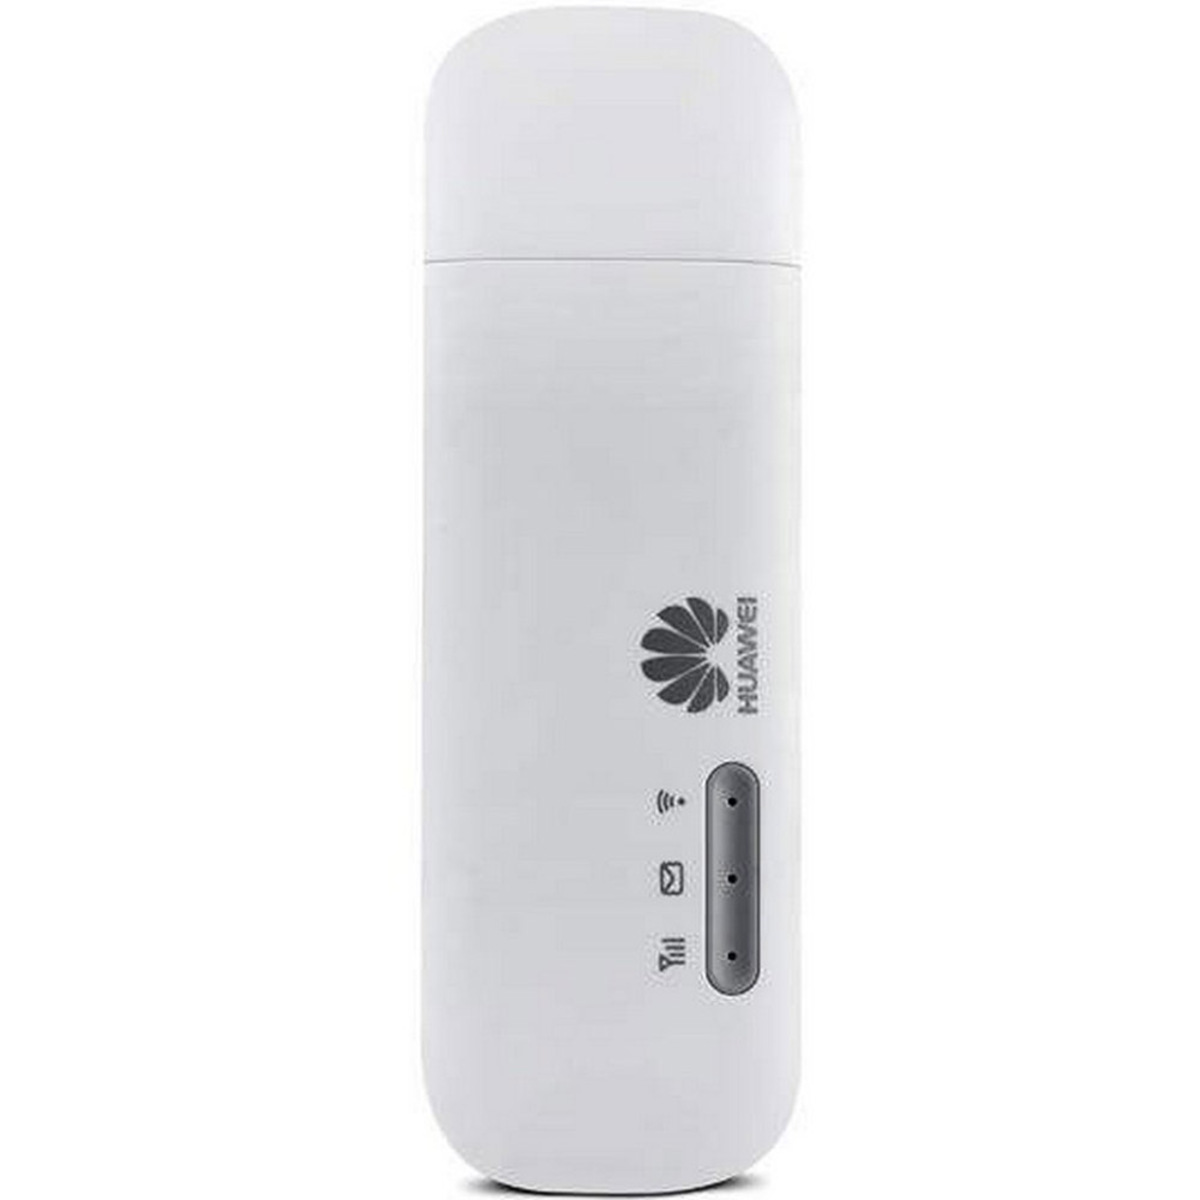 Huawei Data Card 4G+WiFi E8372